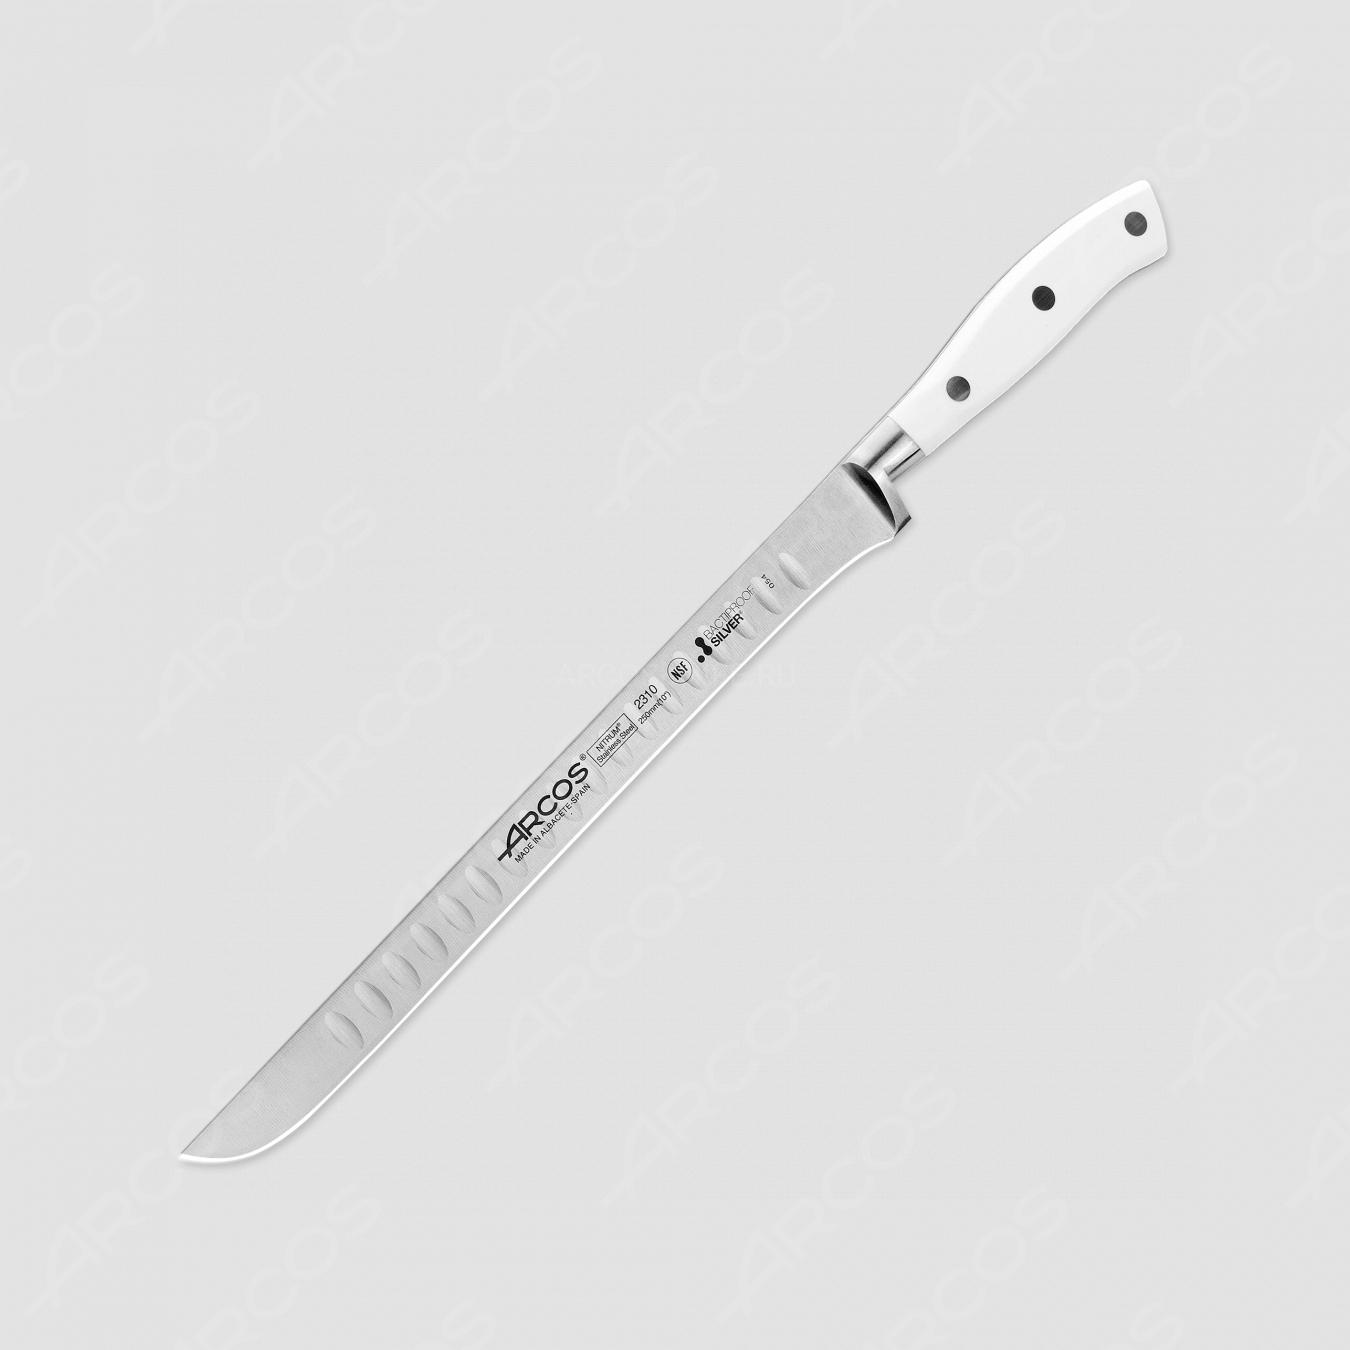 Нож кухонный для резки мяса 25 см, серия Riviera Blanca, ARCOS, Испания